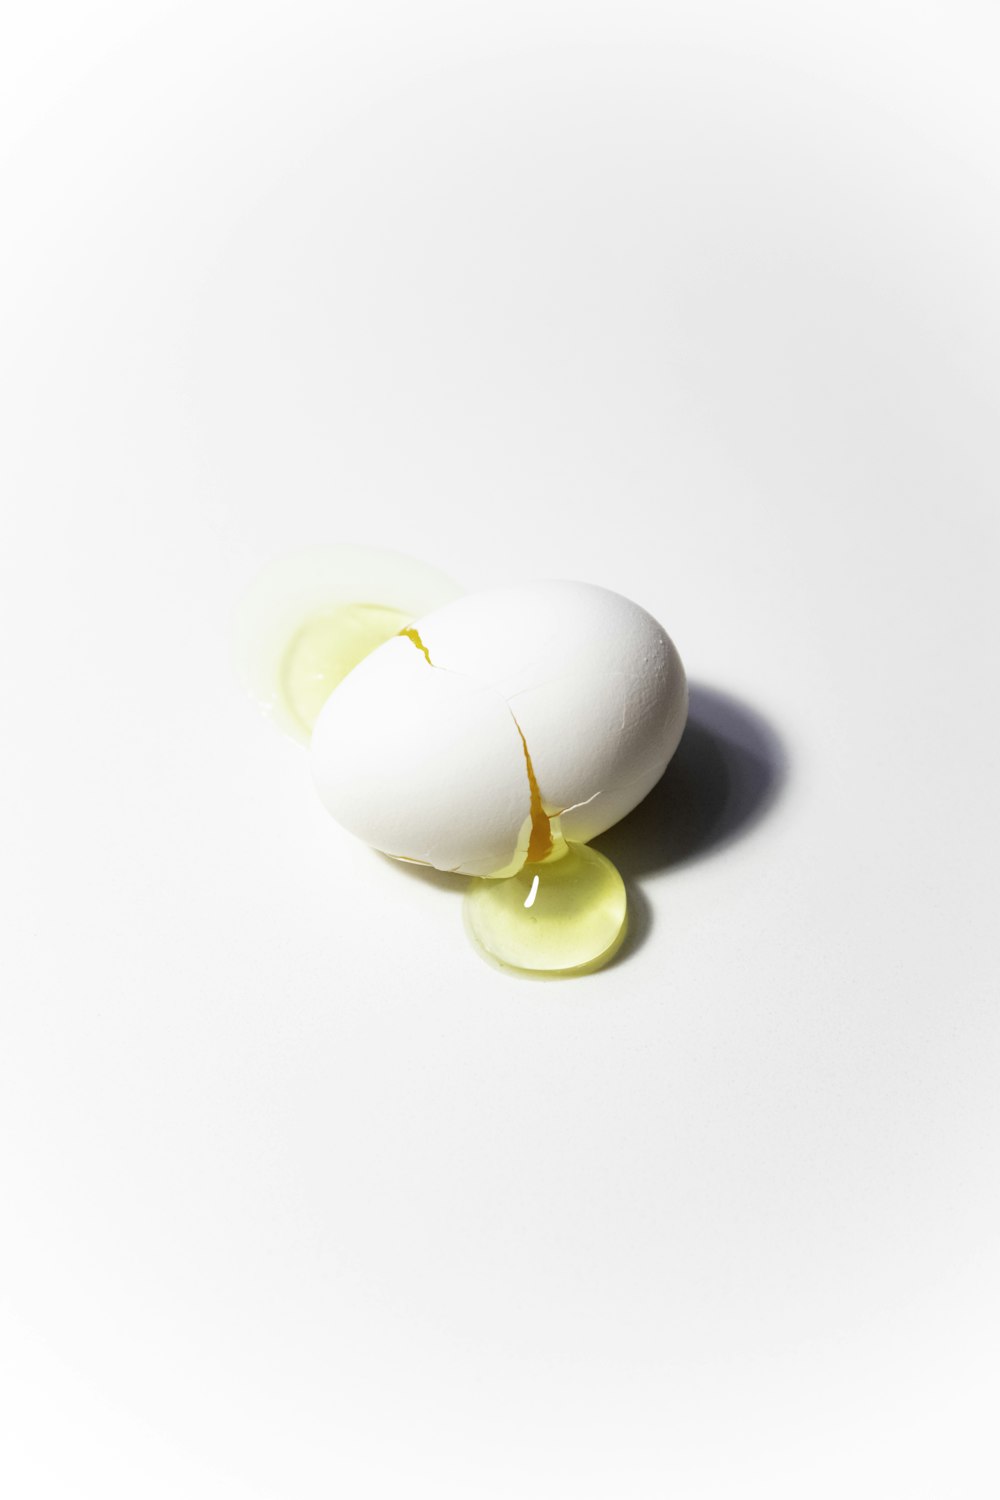 huevo blanco sobre superficie blanca